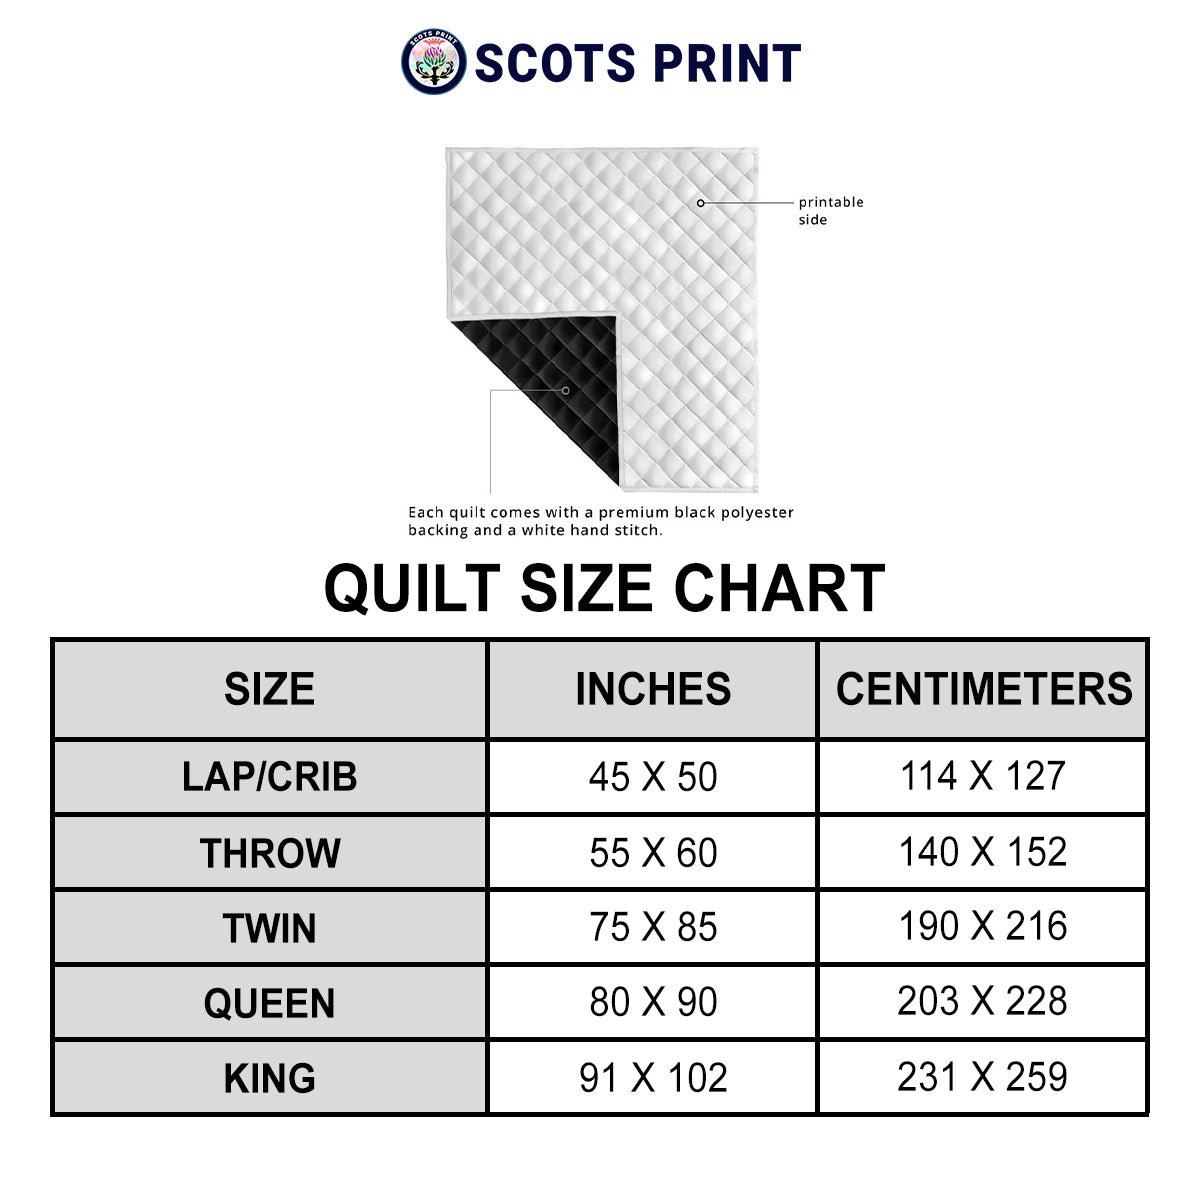 McLean of Duart Modern Tartan Crest Premium Quilt - Celtic Thistle Style